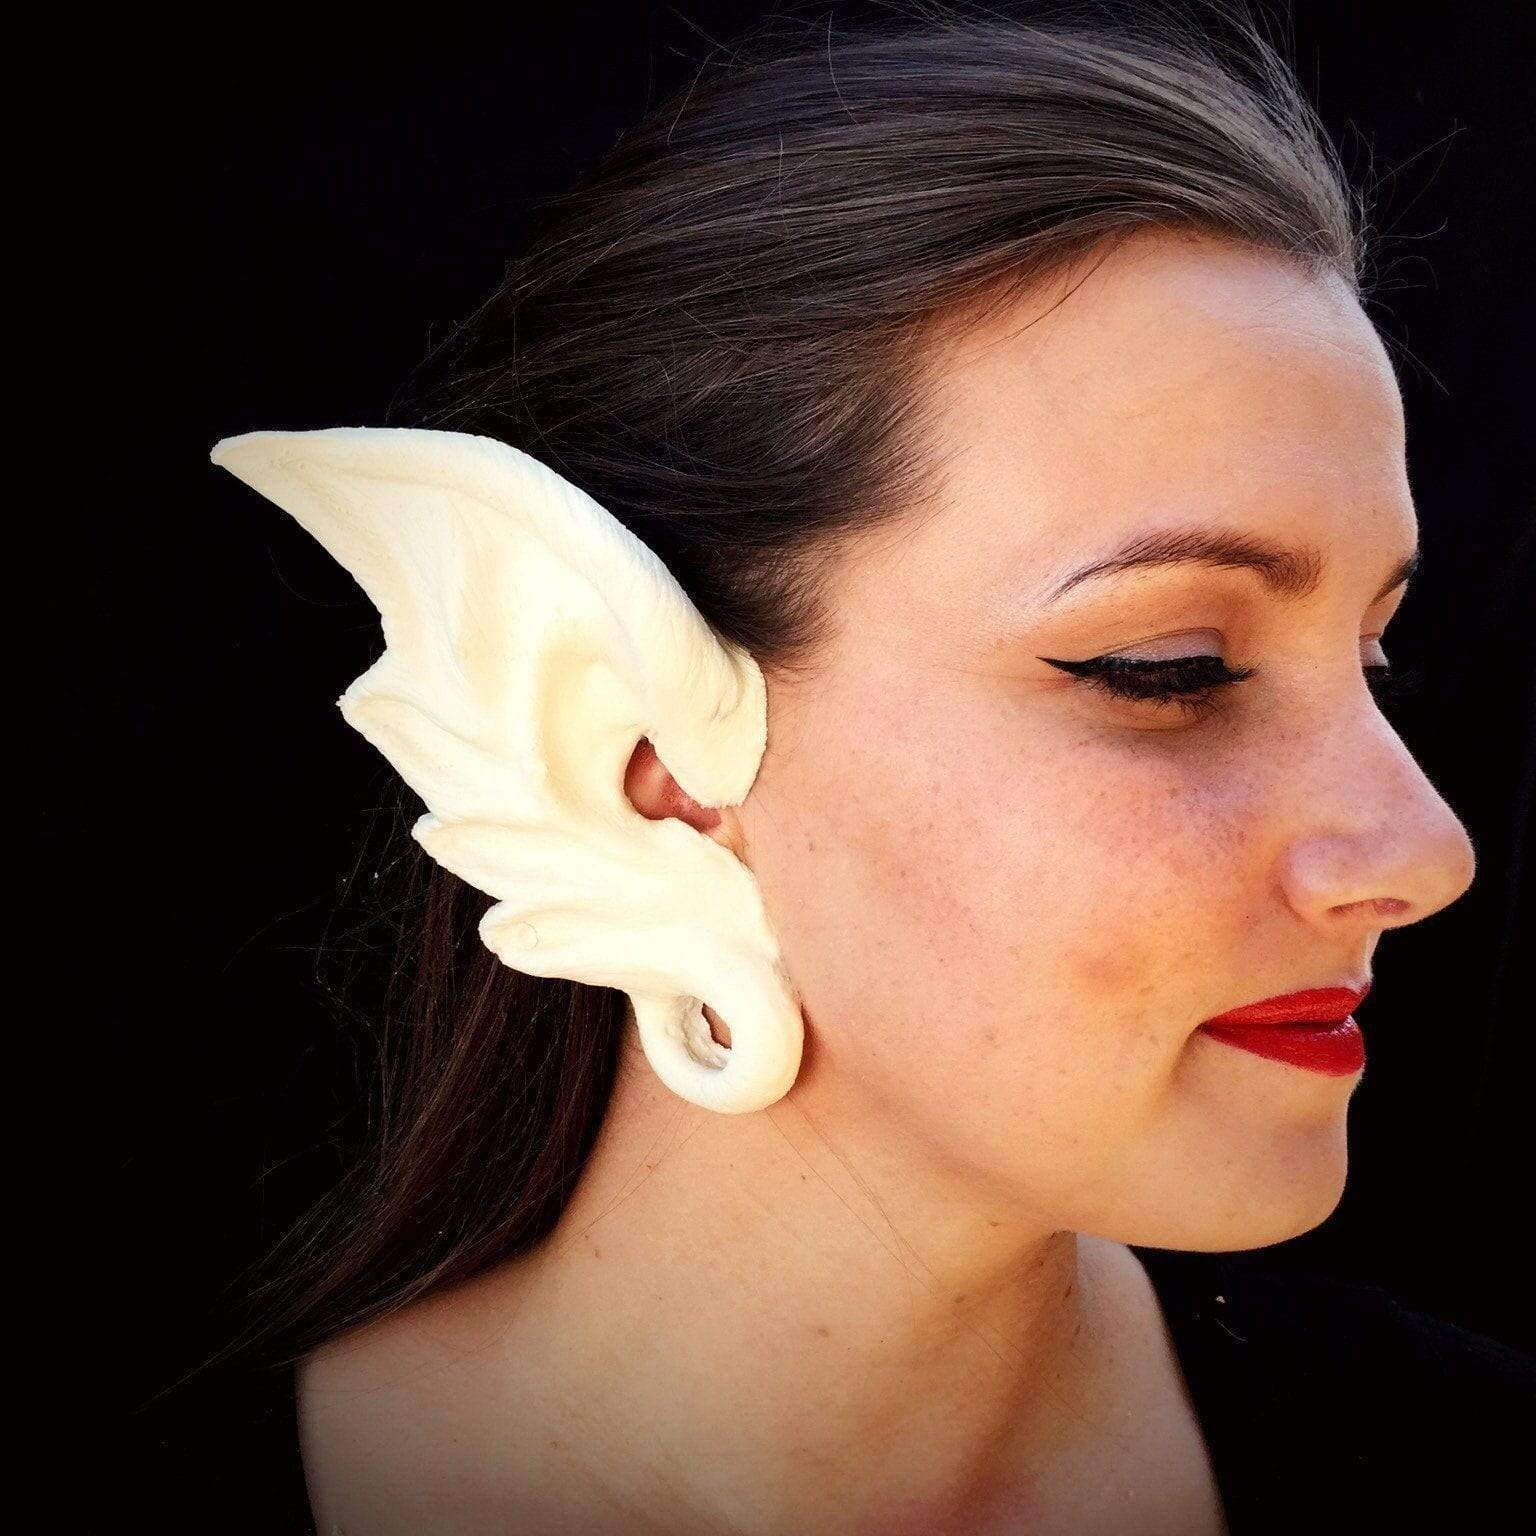 The Scream Team Ears | Monster Gauge Ears | Foam Latex Prosthetic